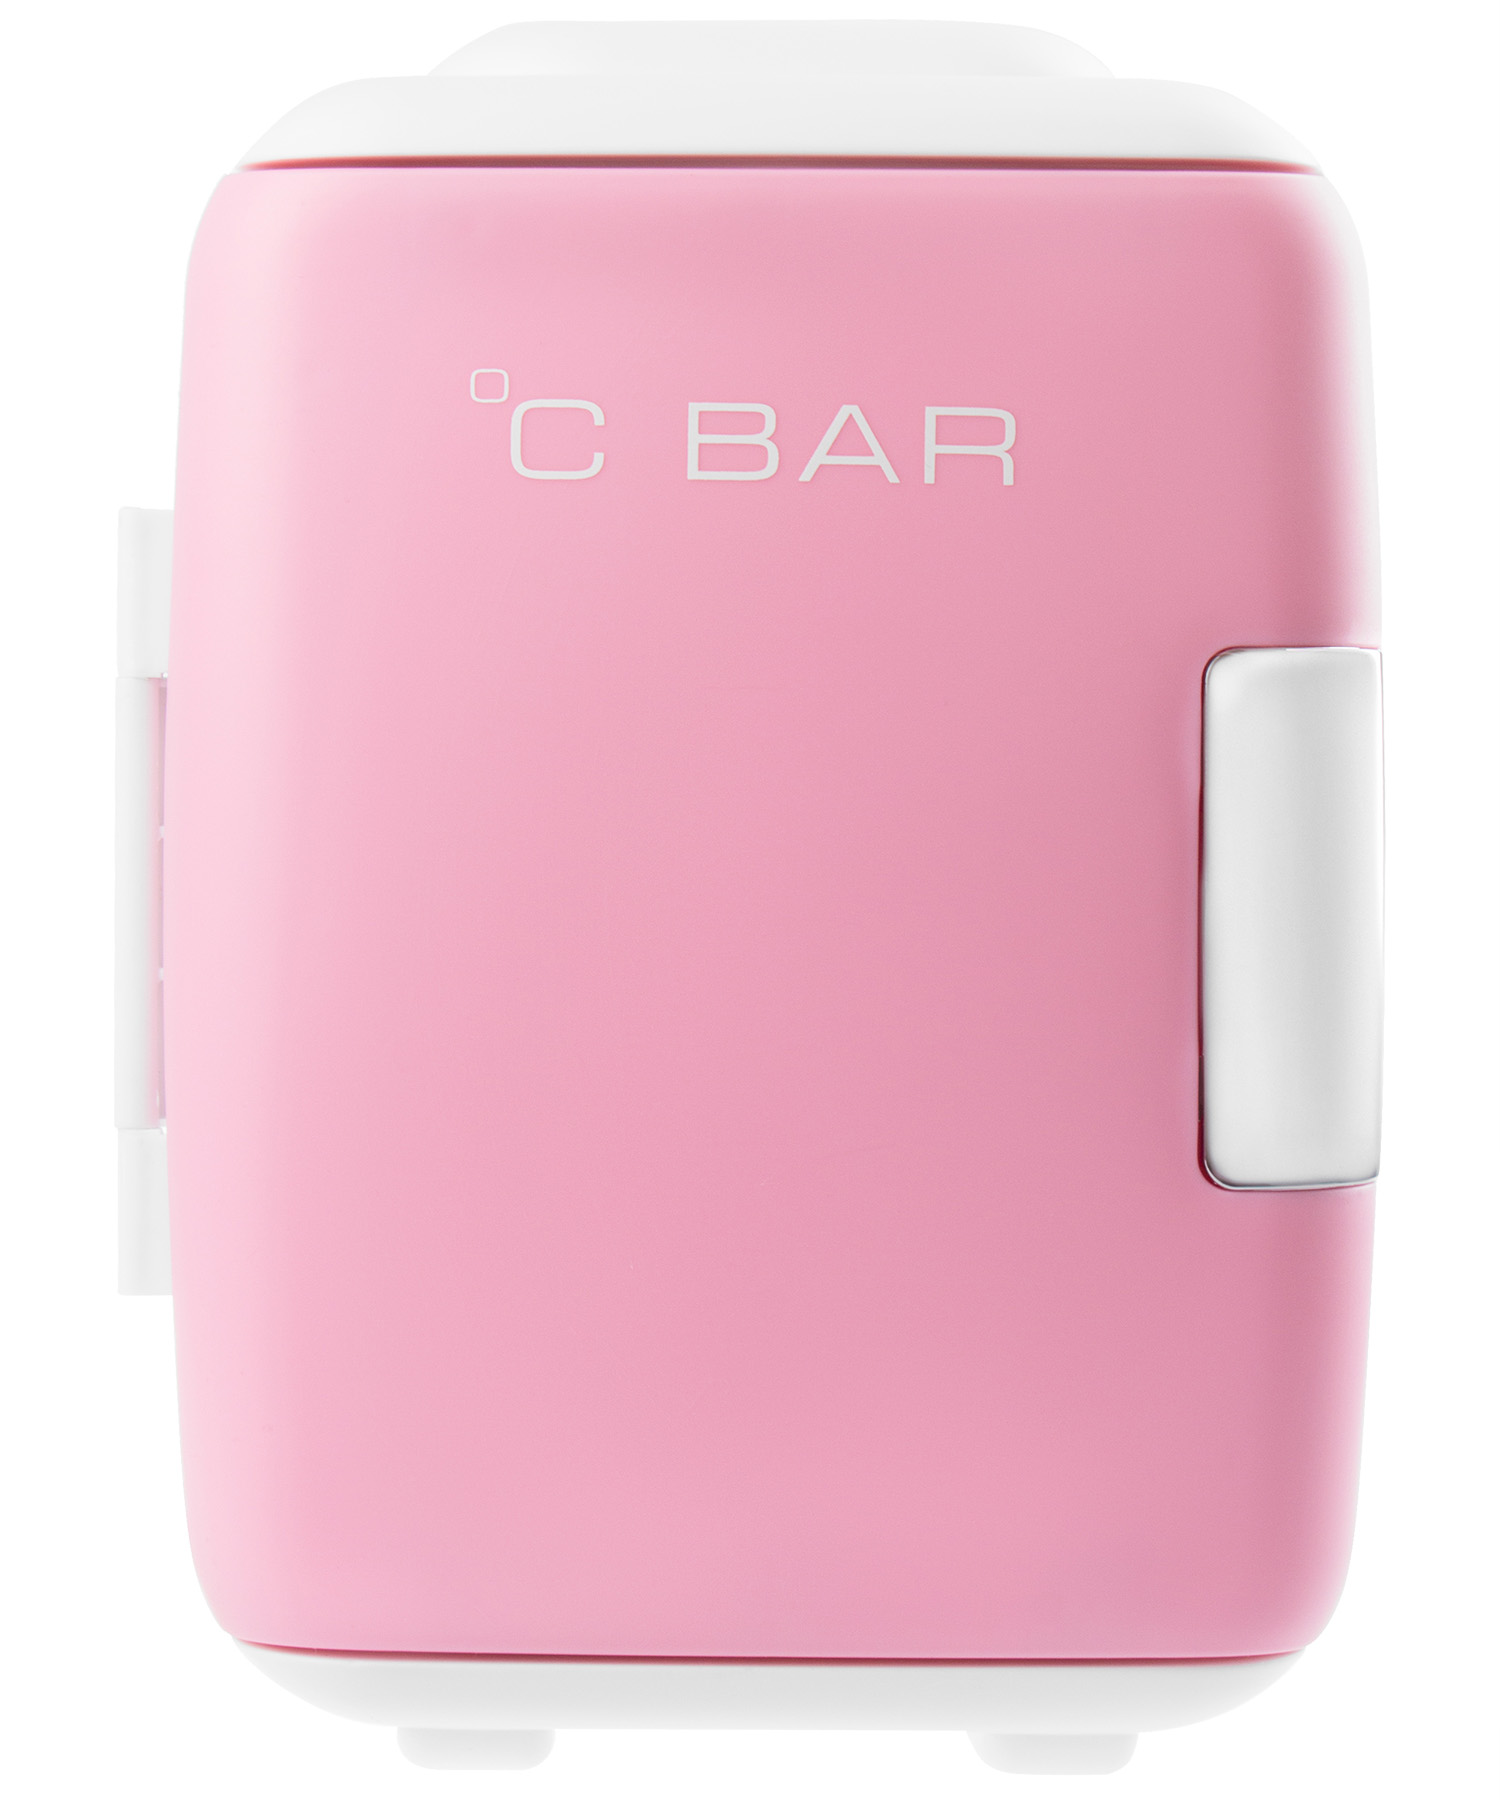 C.Bar Бьюти-холодильник, розовый, 5 л (C.Bar, )